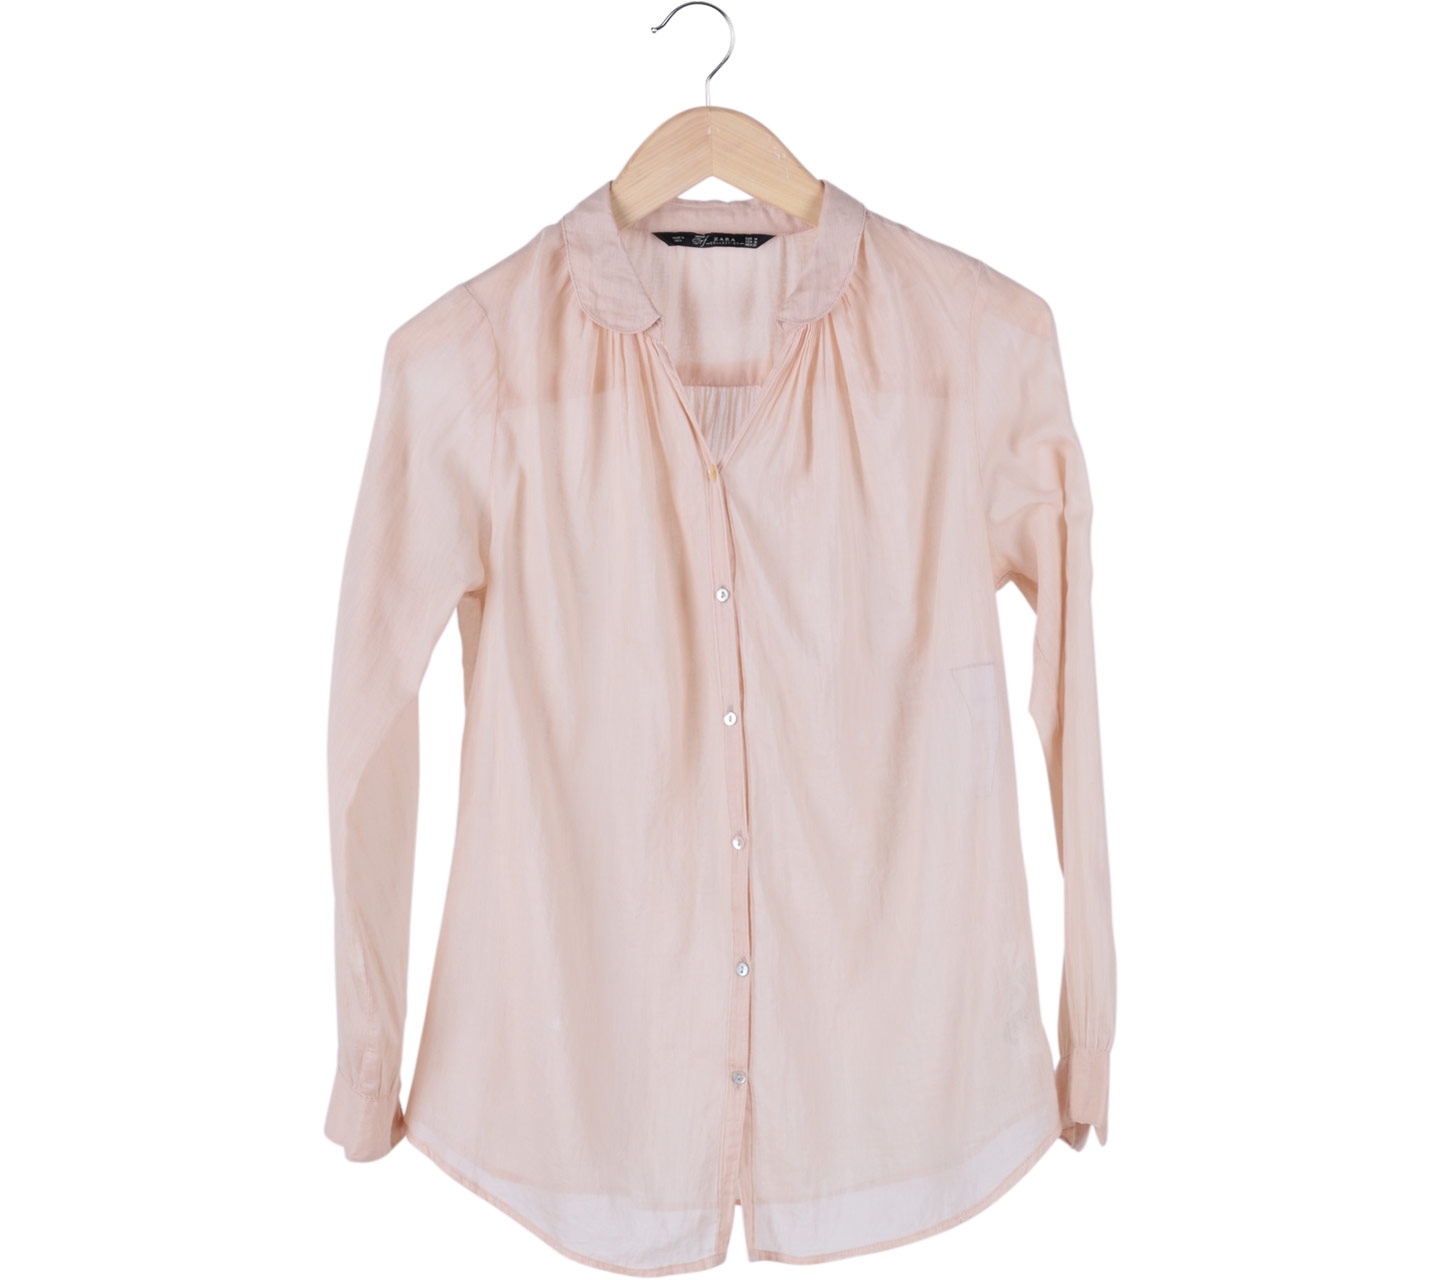 Zara Cream Pleated Shirt